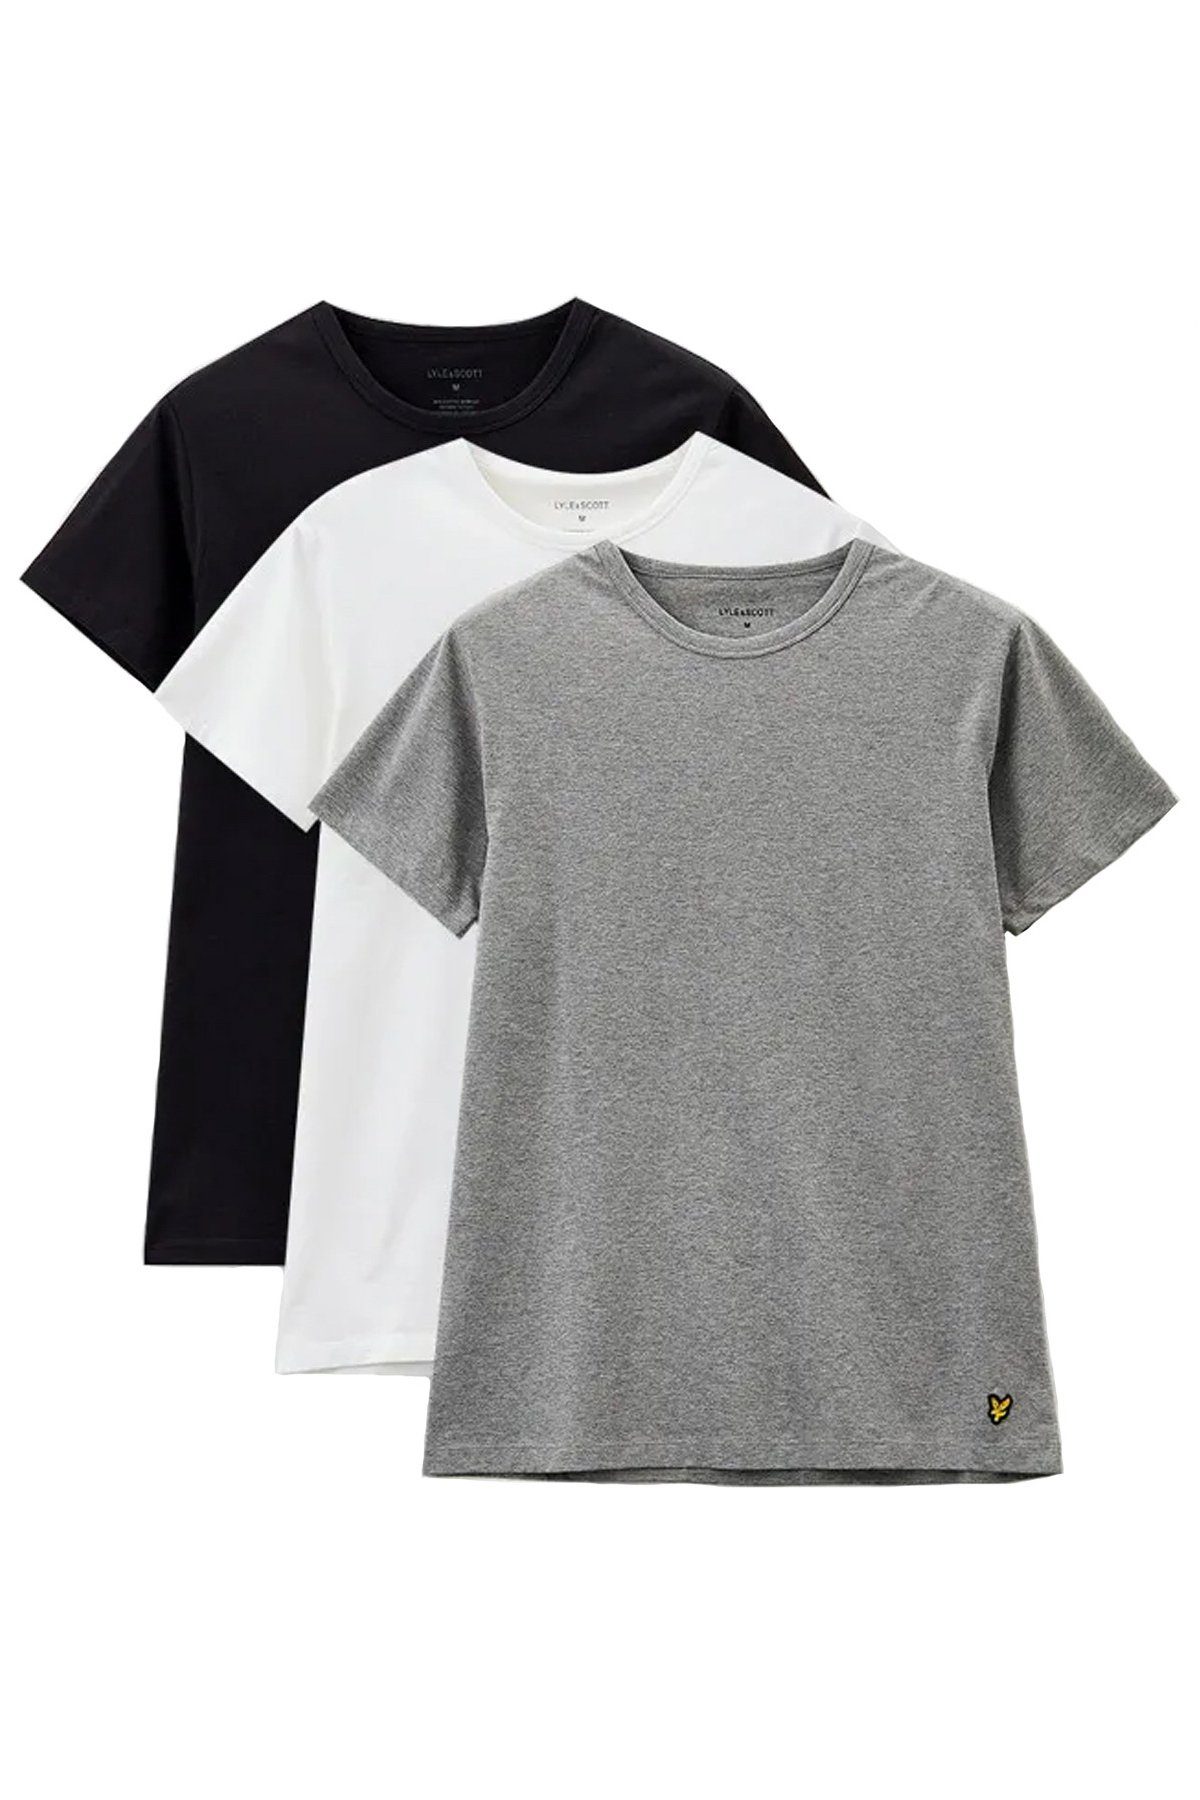 Lyle & Scott T-Shirt Basic Farben (3Er-Set) Tiefschwarz/ Mittelgrau meliert/ Weiß